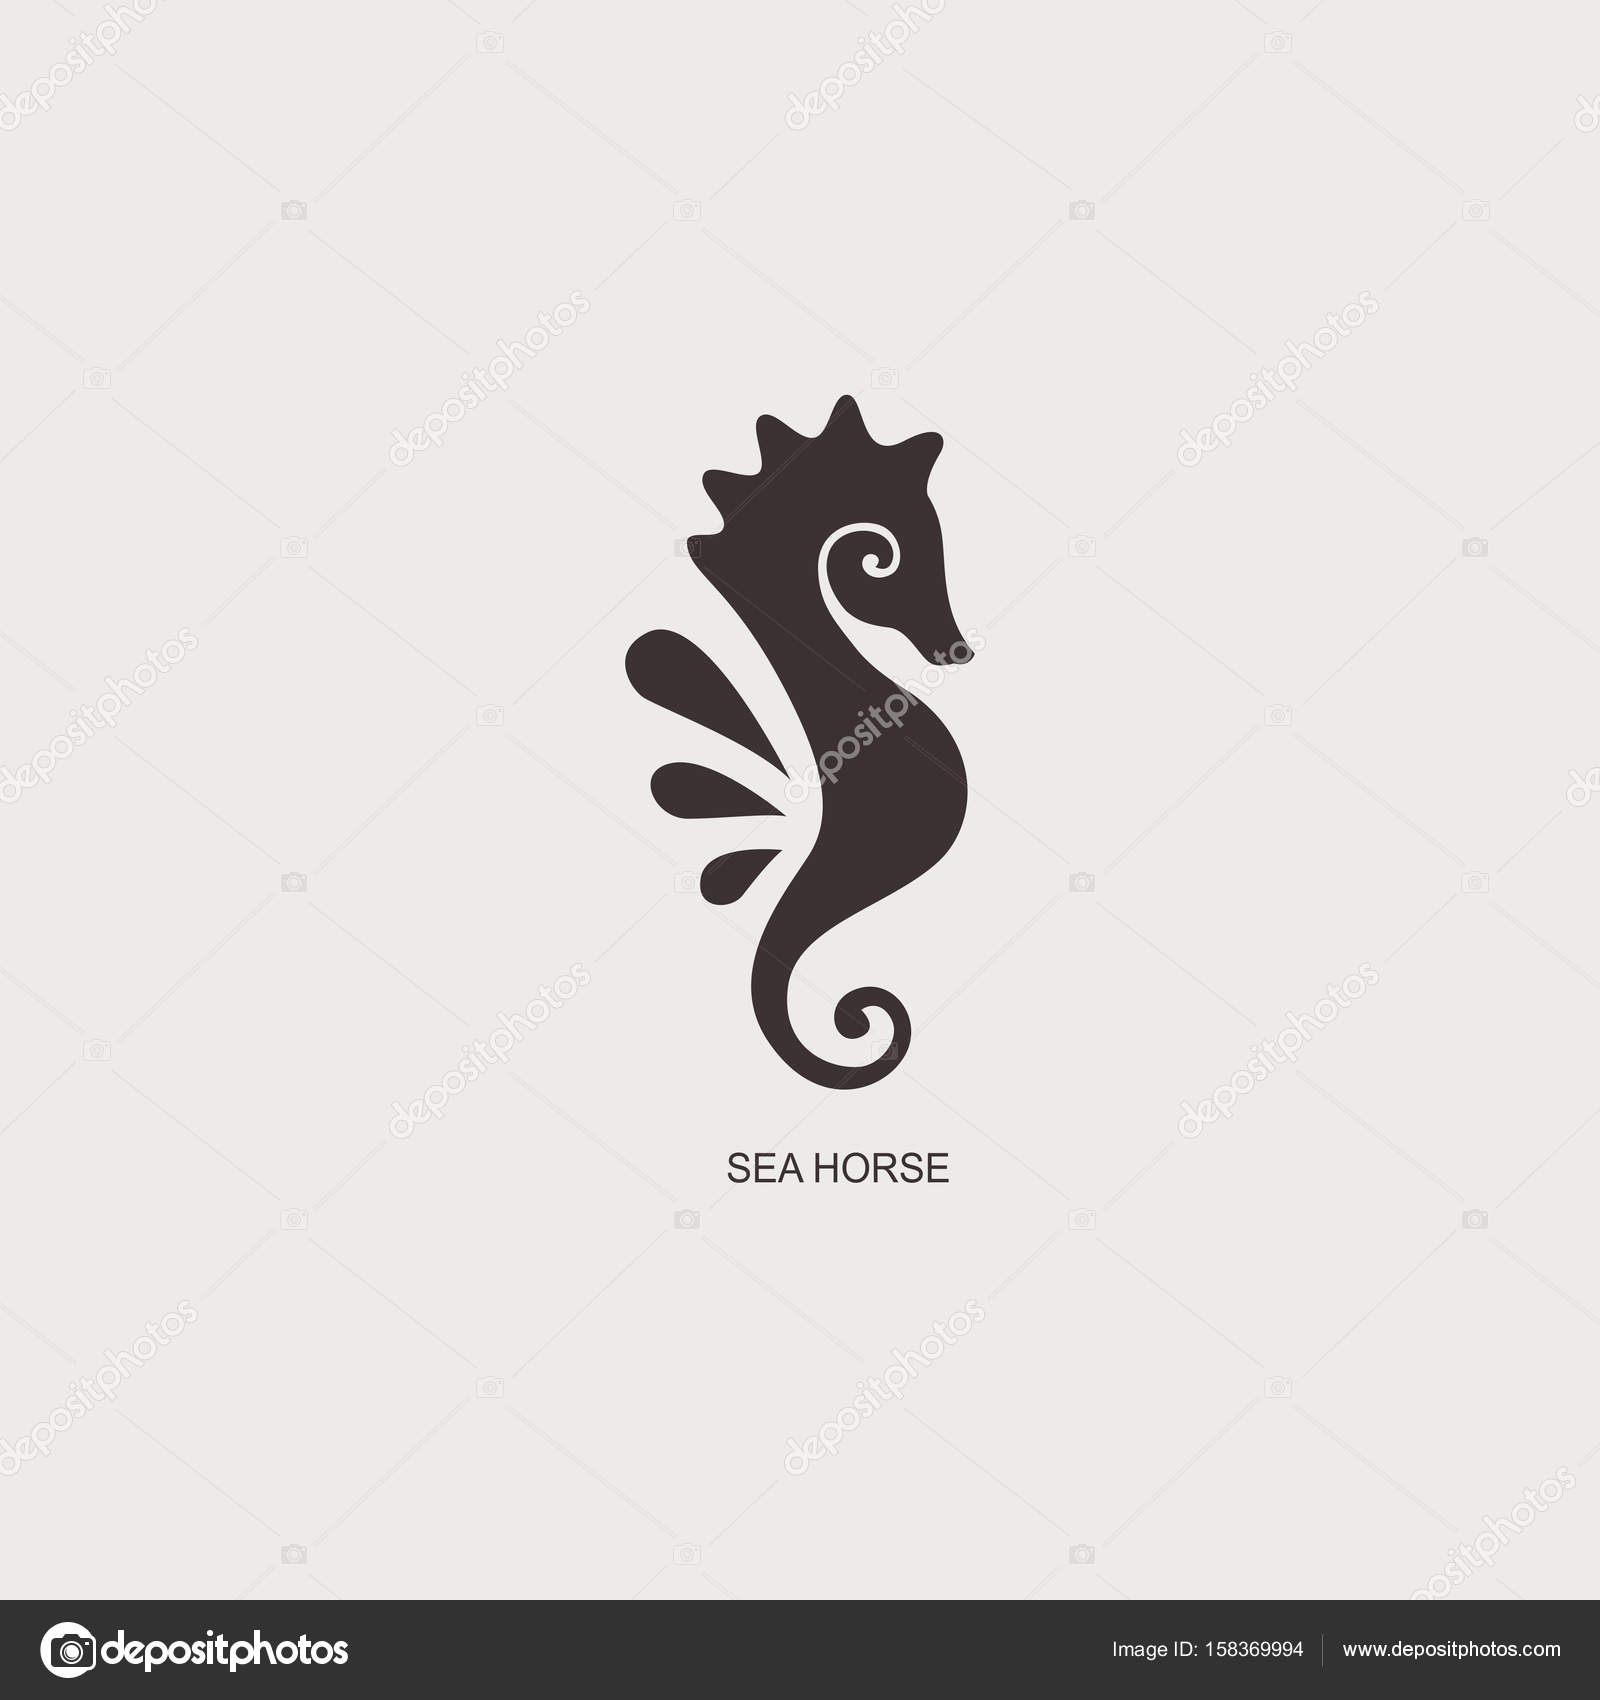 Graphisme stylisé hippocampe Illustration de silhouette de vie marine Dessin pour tatouage sur fond blanc isolé Ic´ne du plat logo Vector — Vecteur par